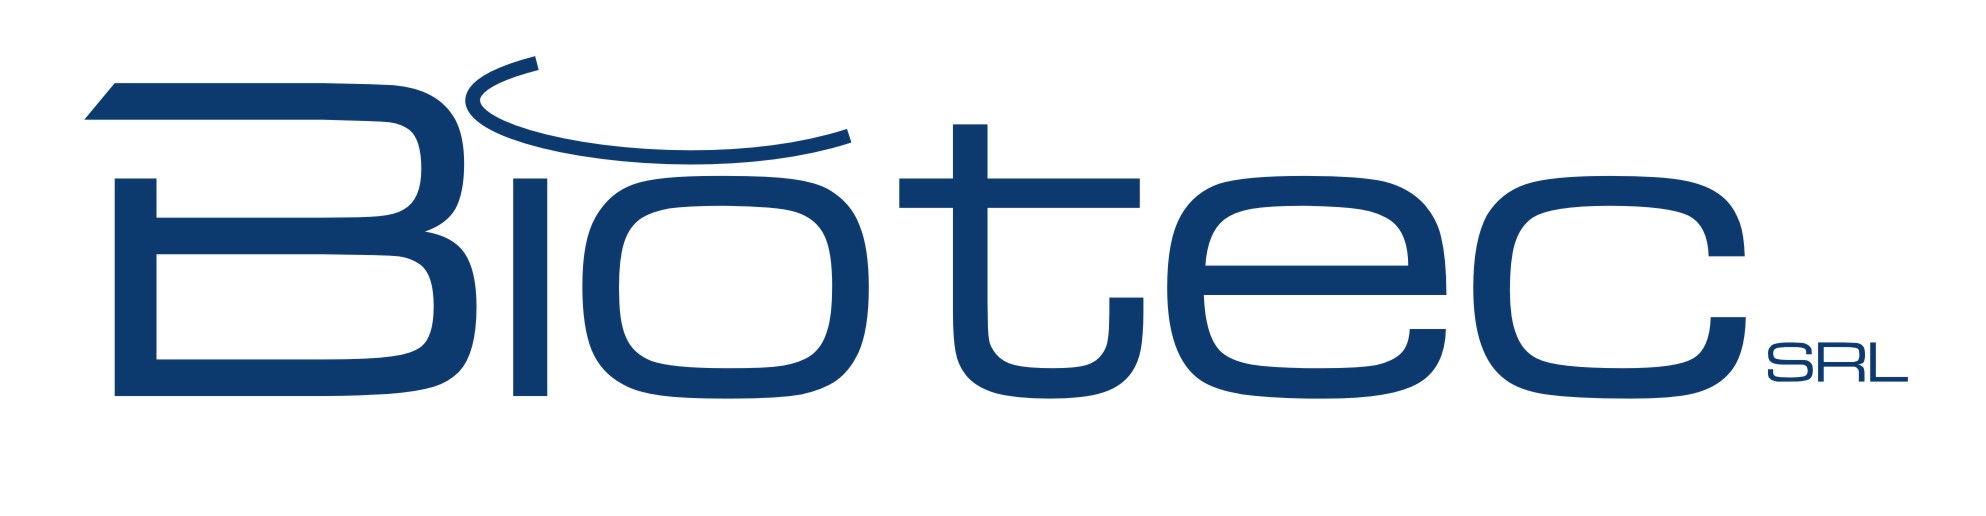 logo Biotec S.r.l.